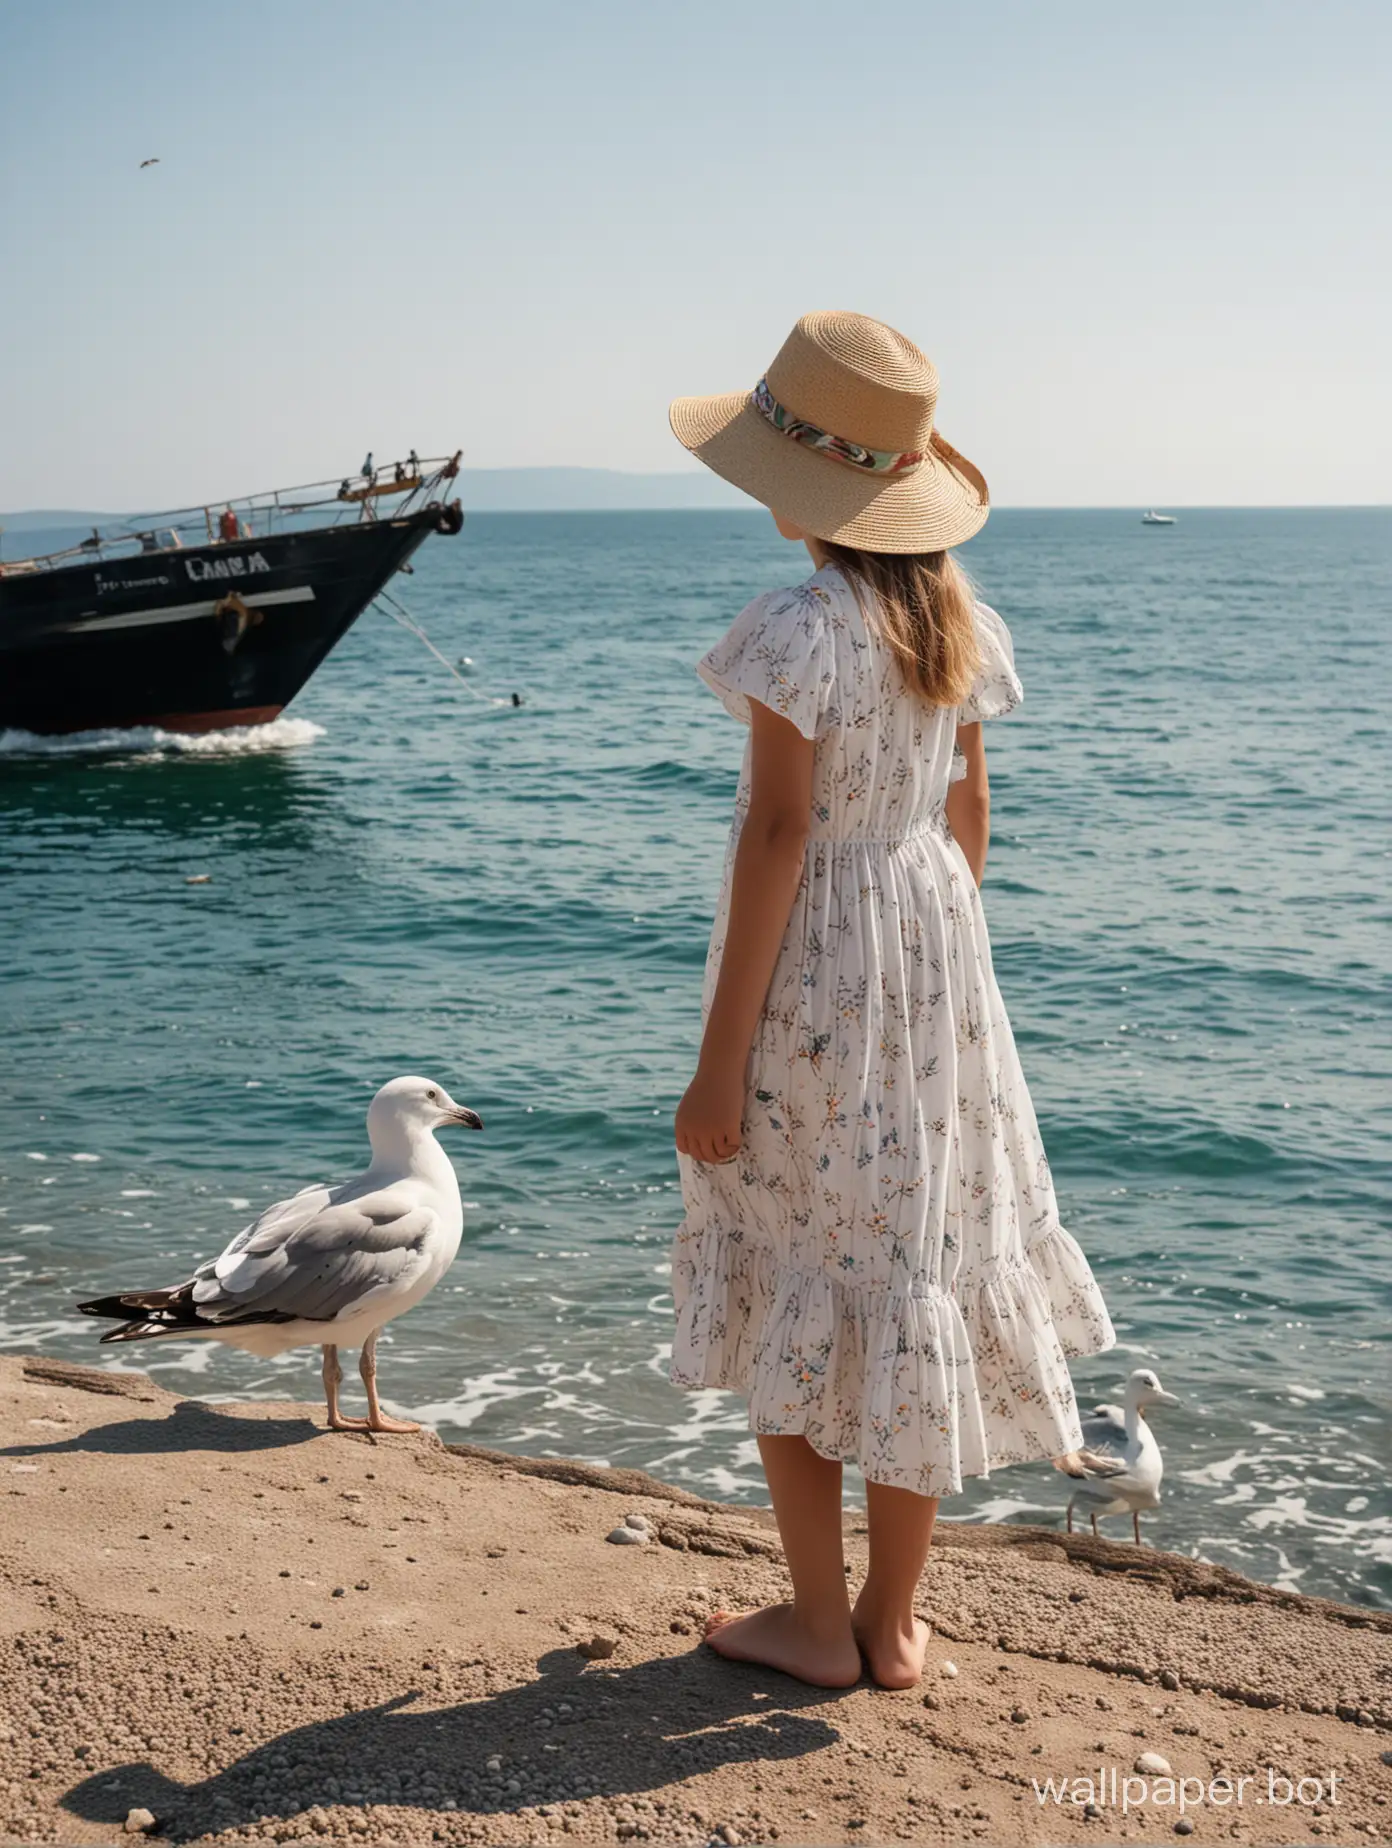 чёрное море, Крым, девочка 11 лет в летнем платье и шляпке, вид сзади, в полный рост, теплоход вдалеке, чайка